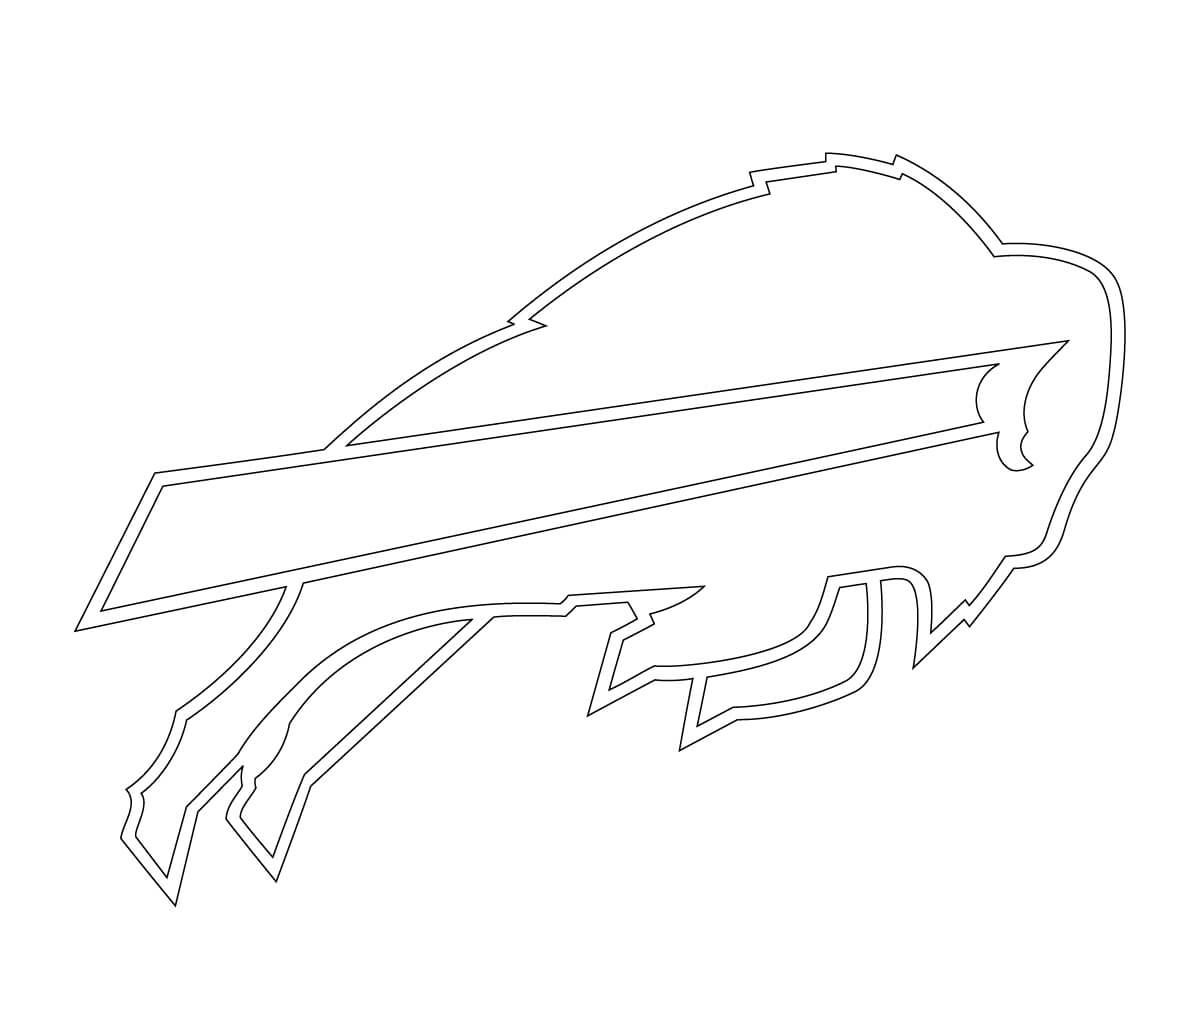 Bills logo.jpg